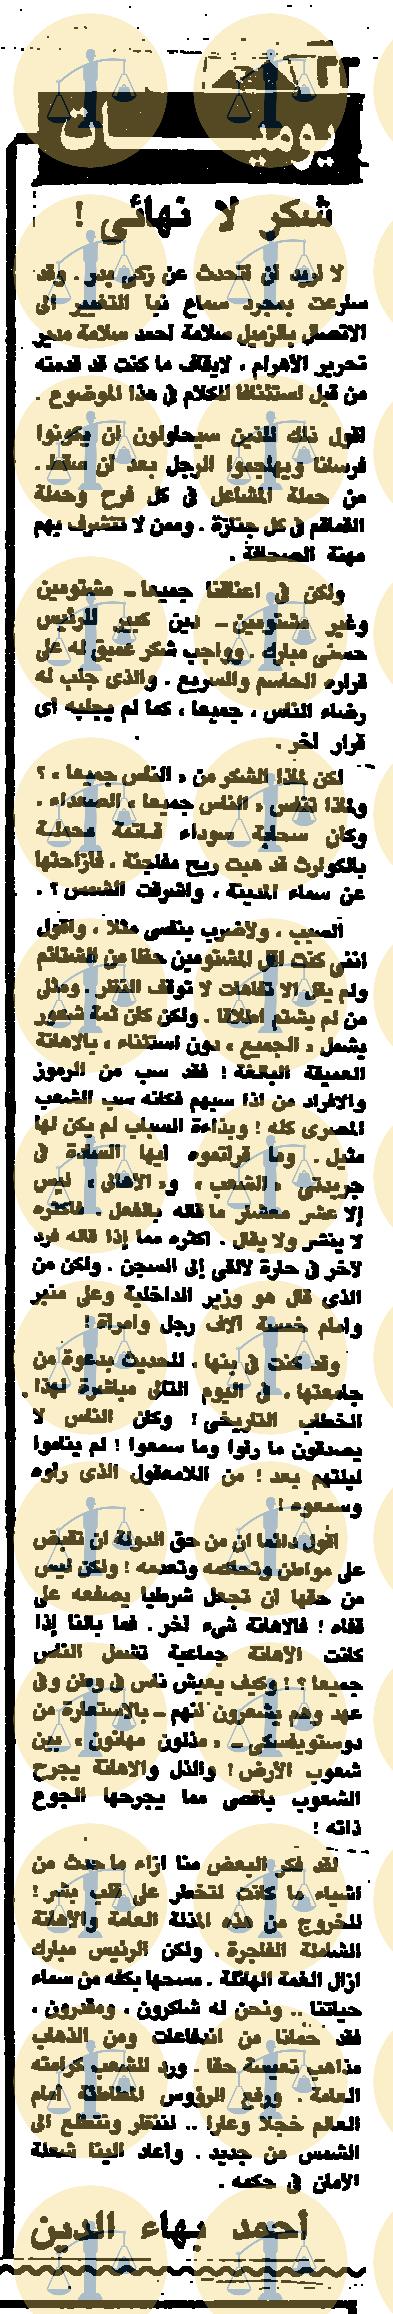 مقال أحمد بهاء الدين، جريدة الأهرام، عدد 14 يناير 1990م، ص22